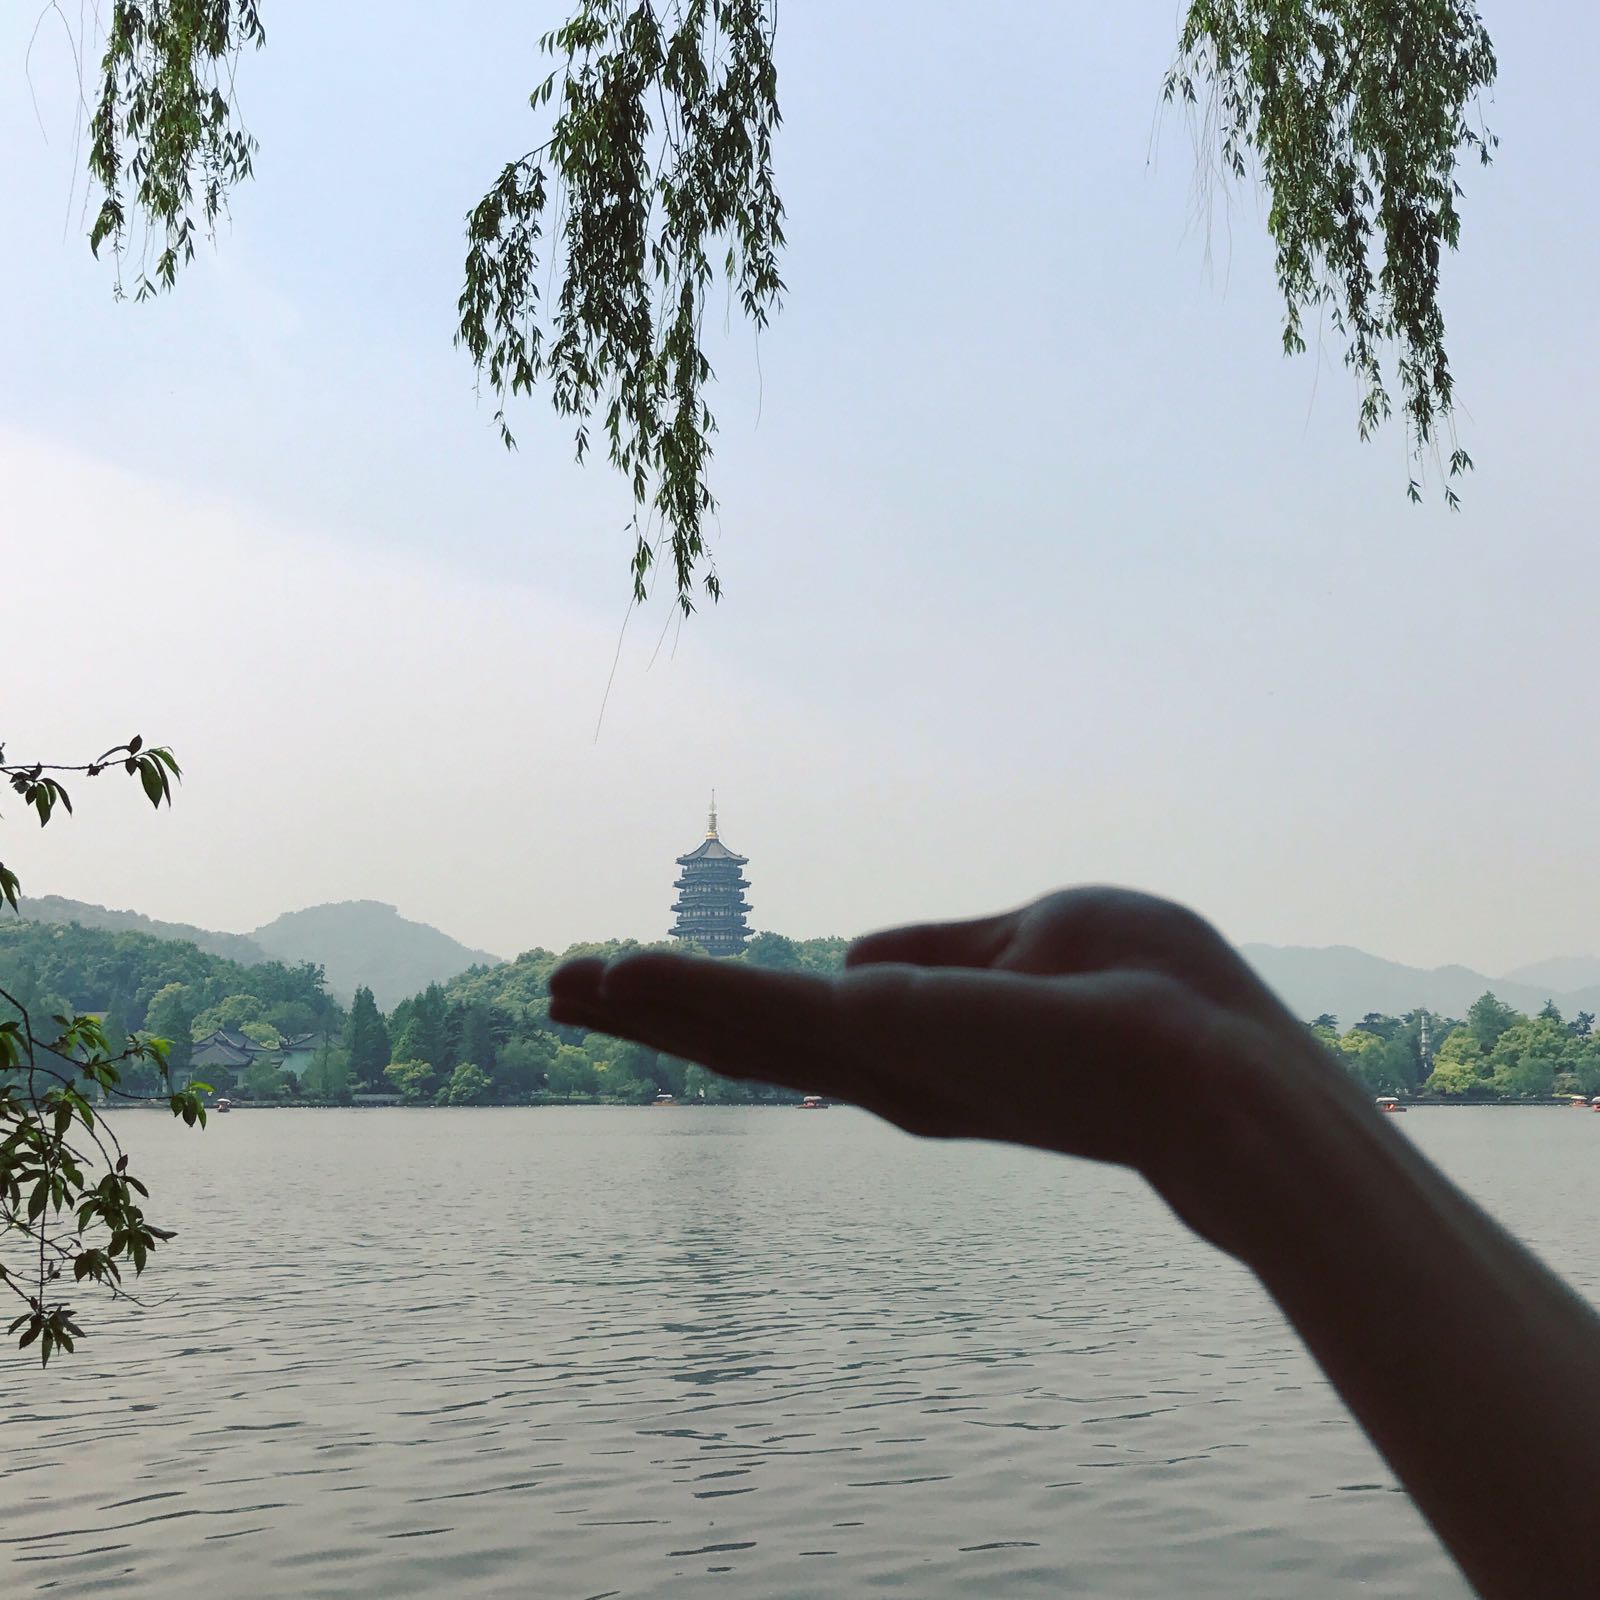 去了那么多次杭州 终于上了雷峰塔啦！风景很棒！